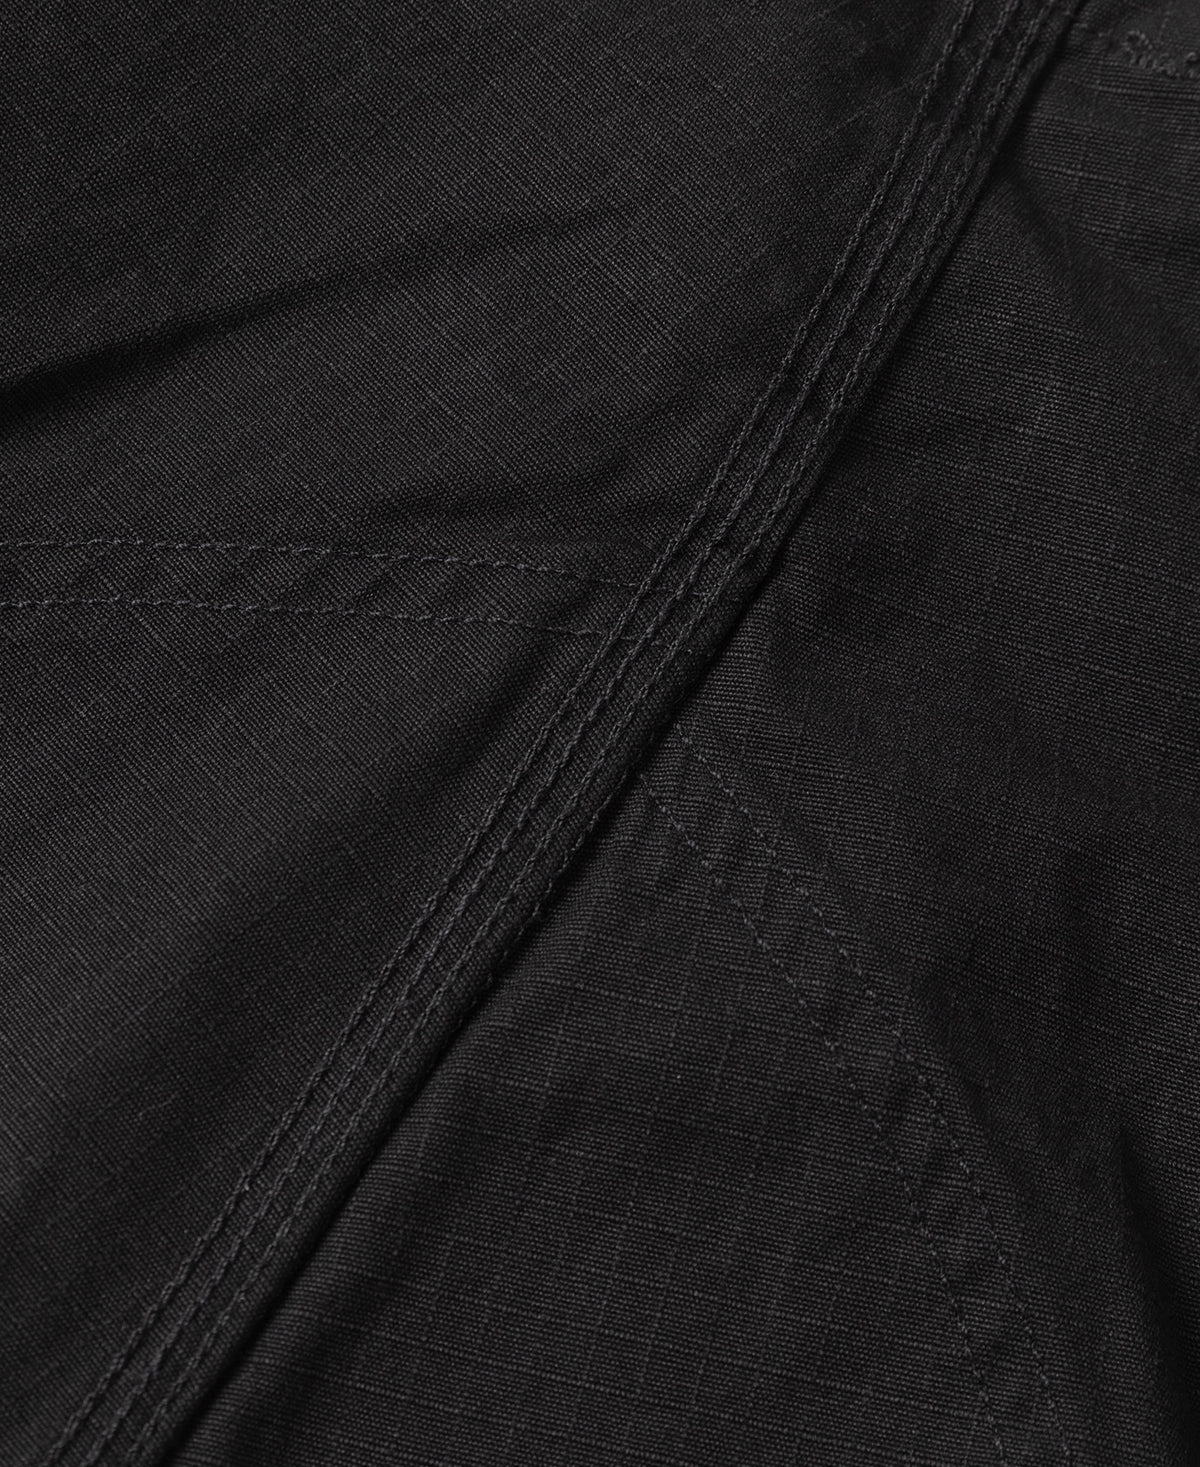 8.5 oz Cotton Ripstop Cargo Shorts - Black